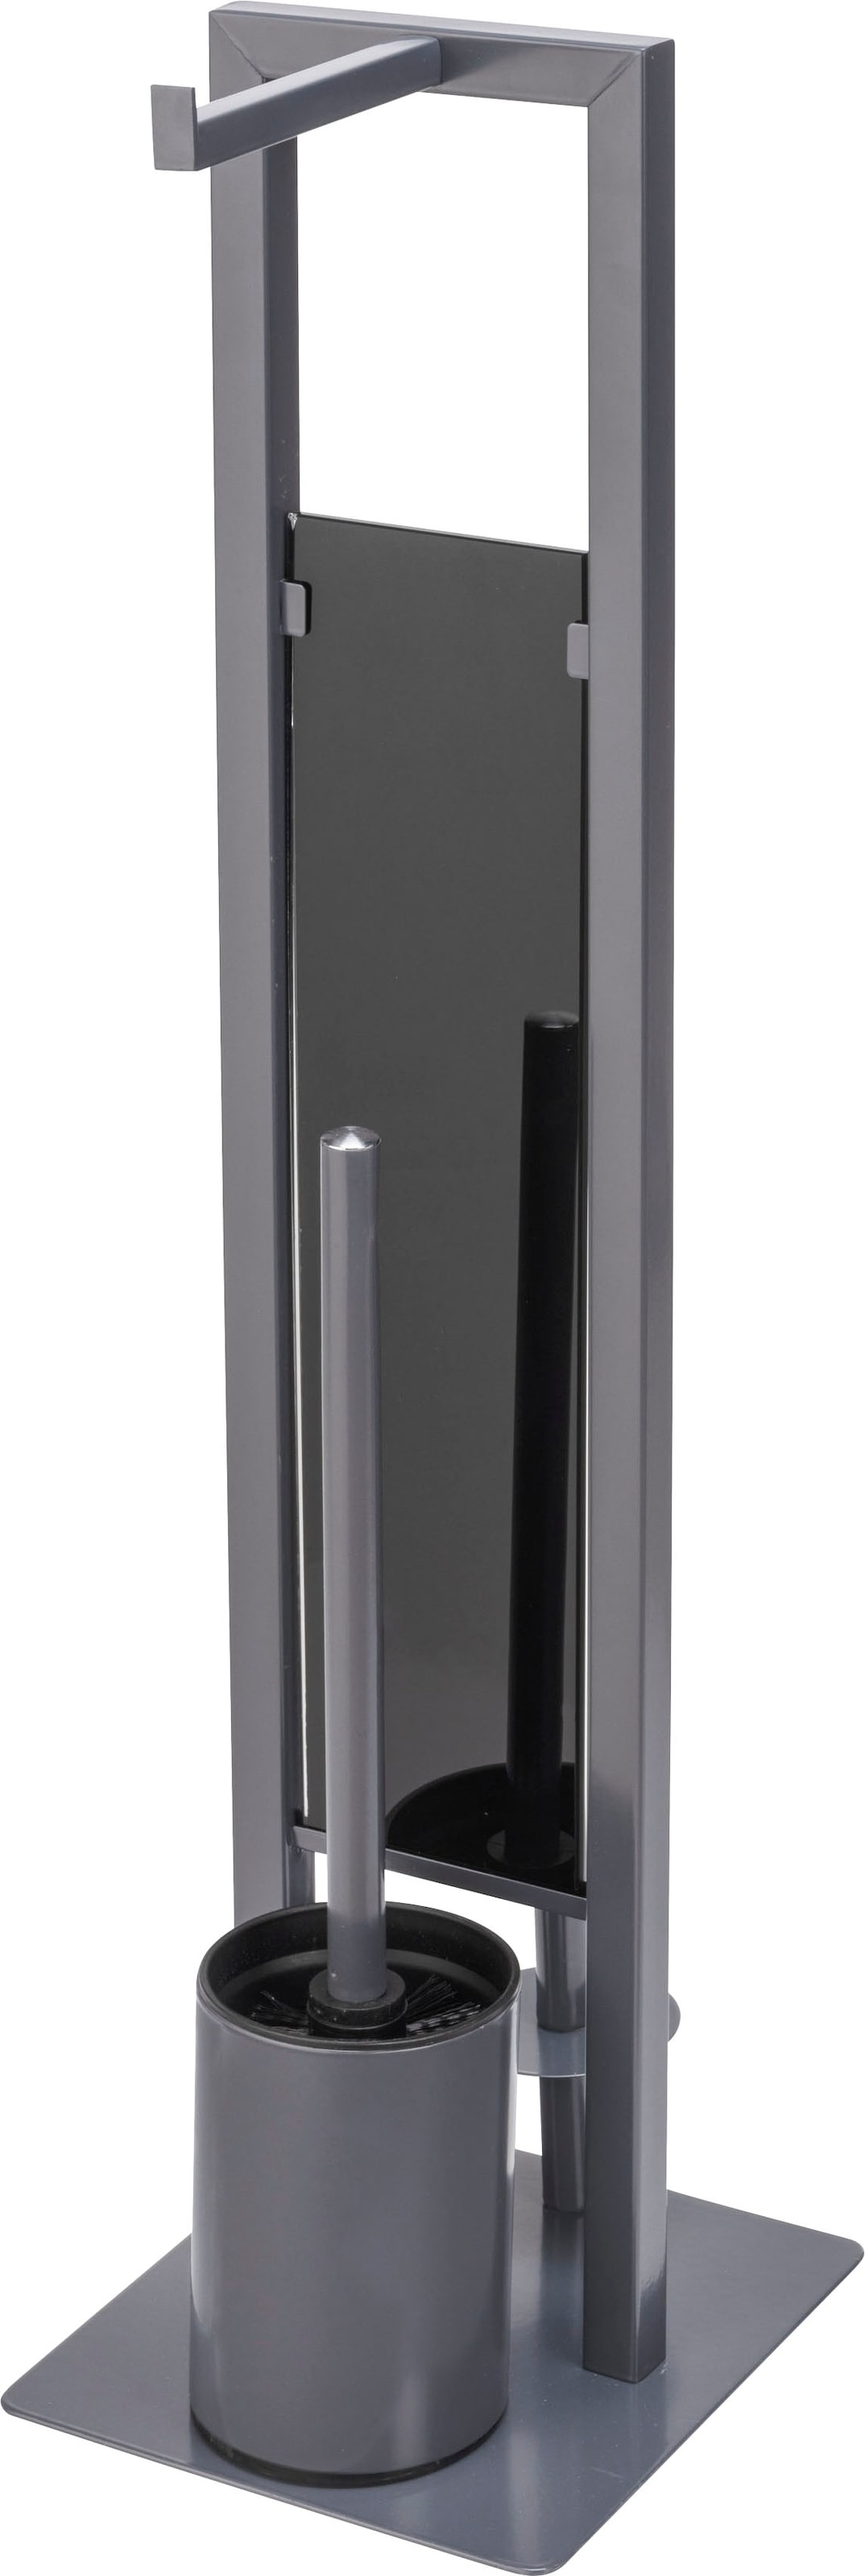 WENKO WC-Garnitur »Rivalta«, aus Stahl-Glas-Polypropylen, grau, Platte aus Sicherheitsglas